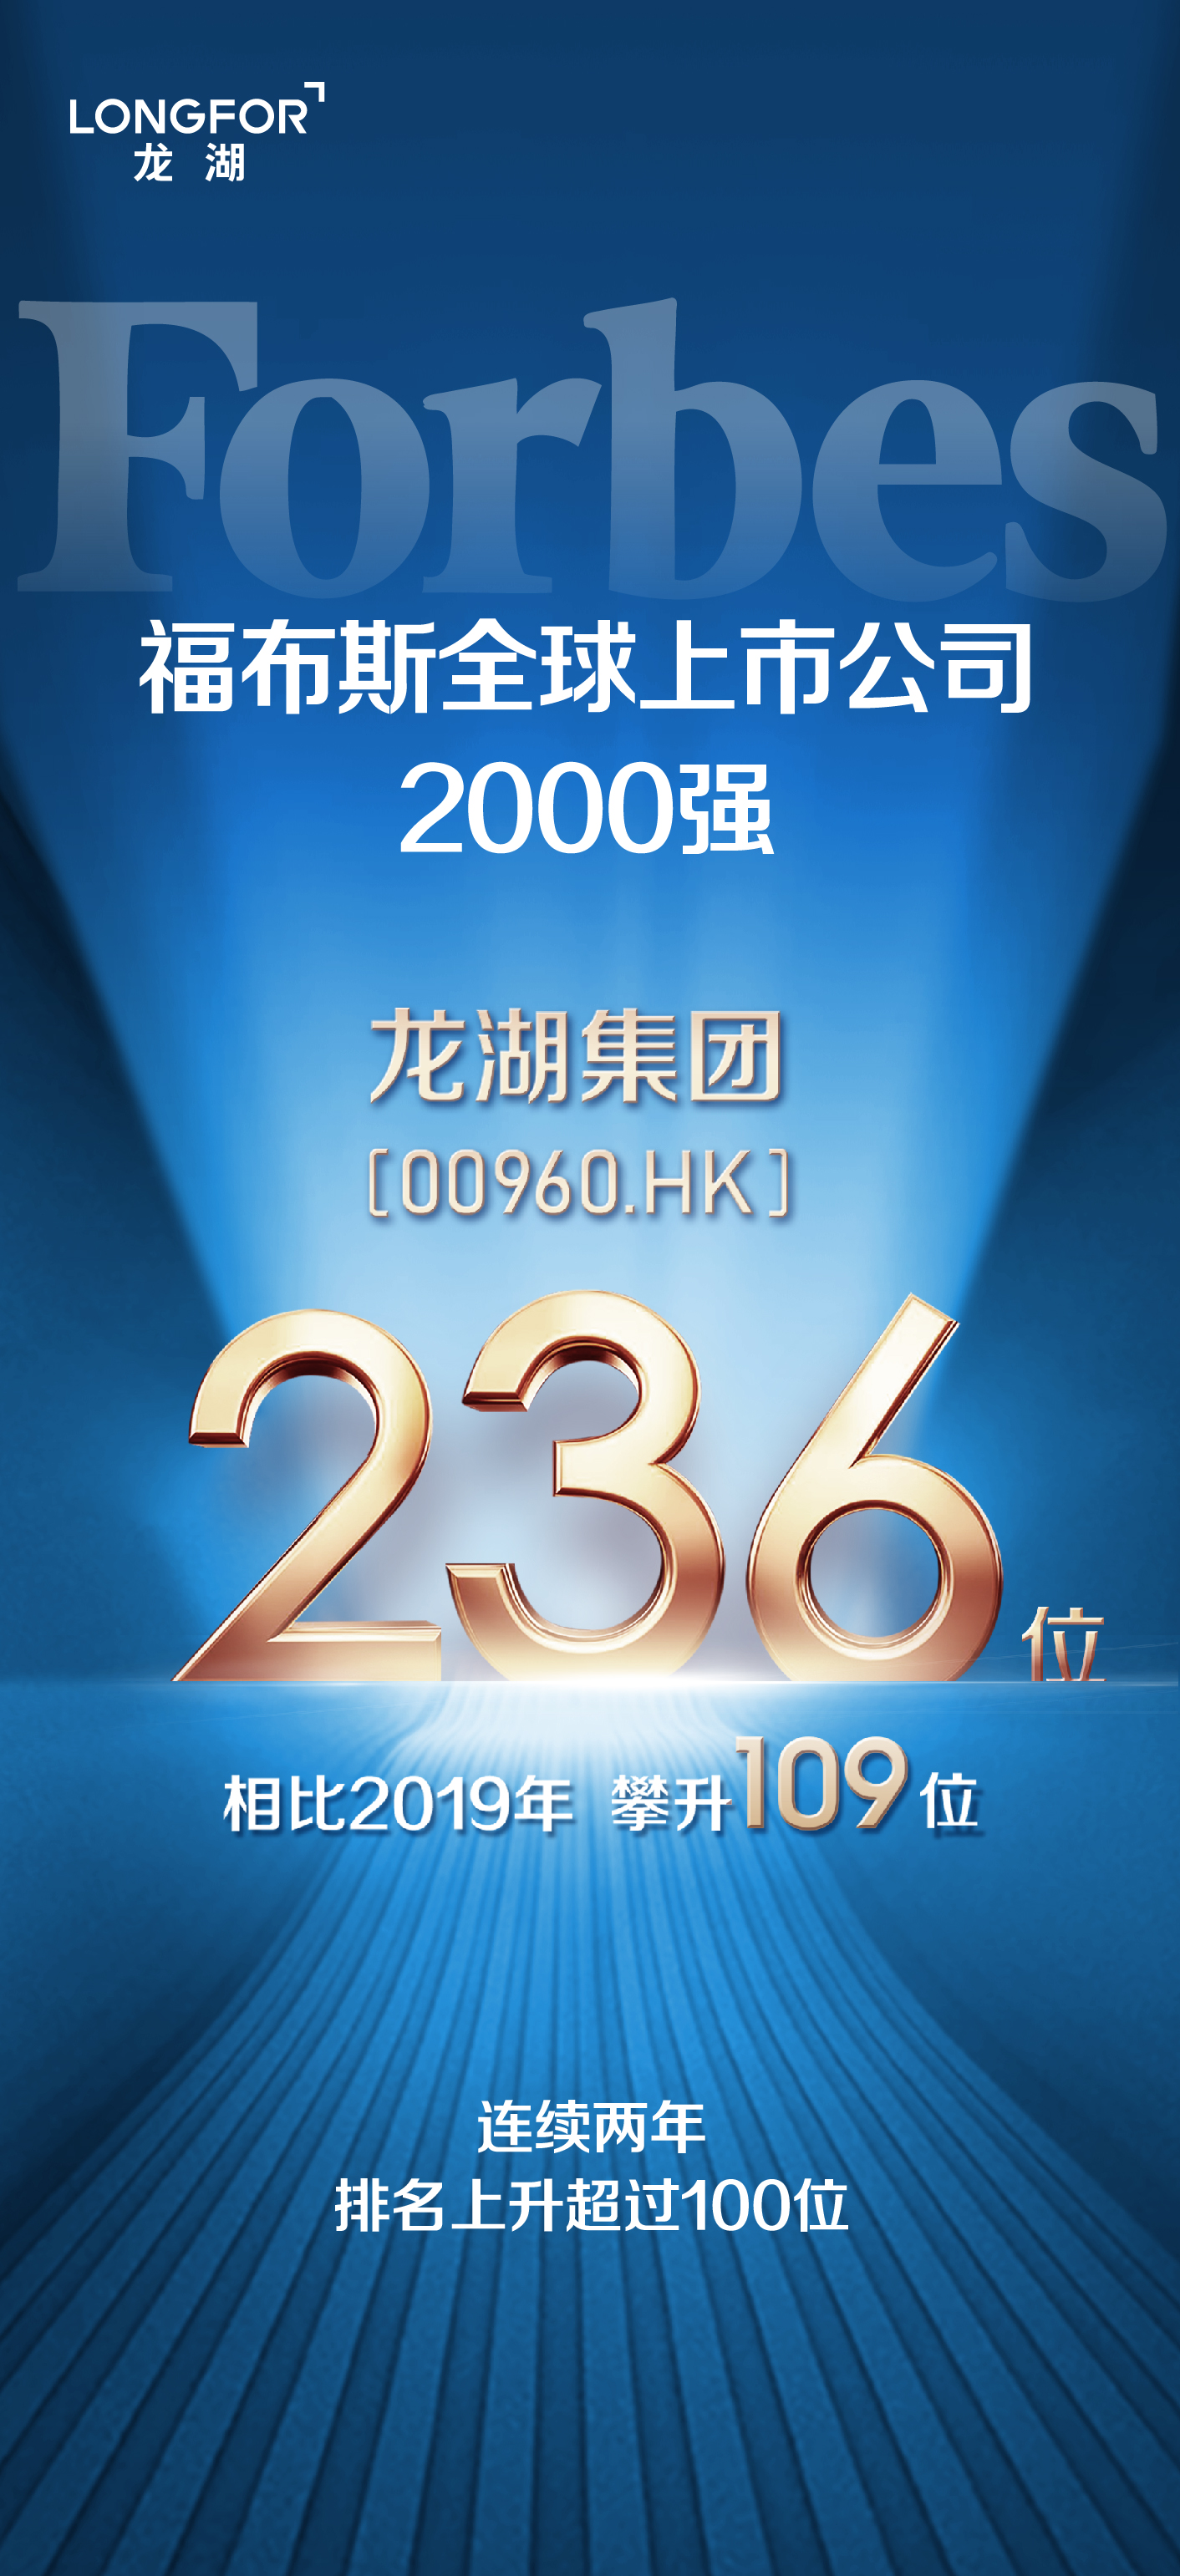 龙湖集团荣登《福布斯》全球2000强第236位 连续两年跃升超100位